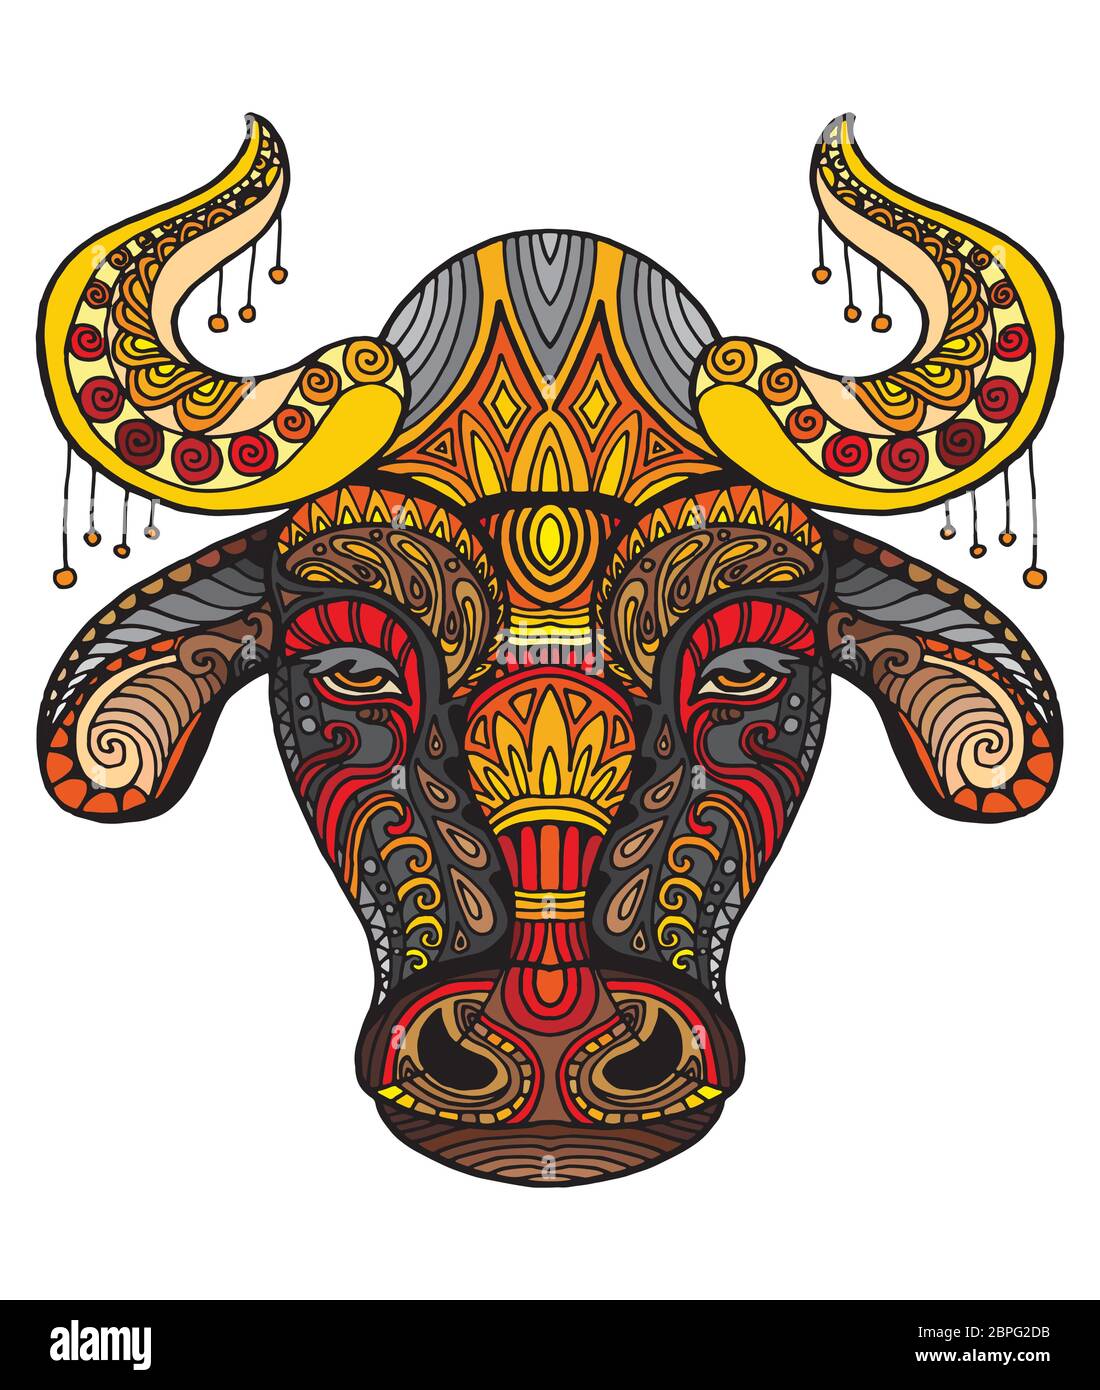 Vettore decorativo doodle testa ornamentale di toro. Vettore astratto colorato illustrazione della testa di toro isolato su sfondo bianco. Illustrazione del magazzino Illustrazione Vettoriale